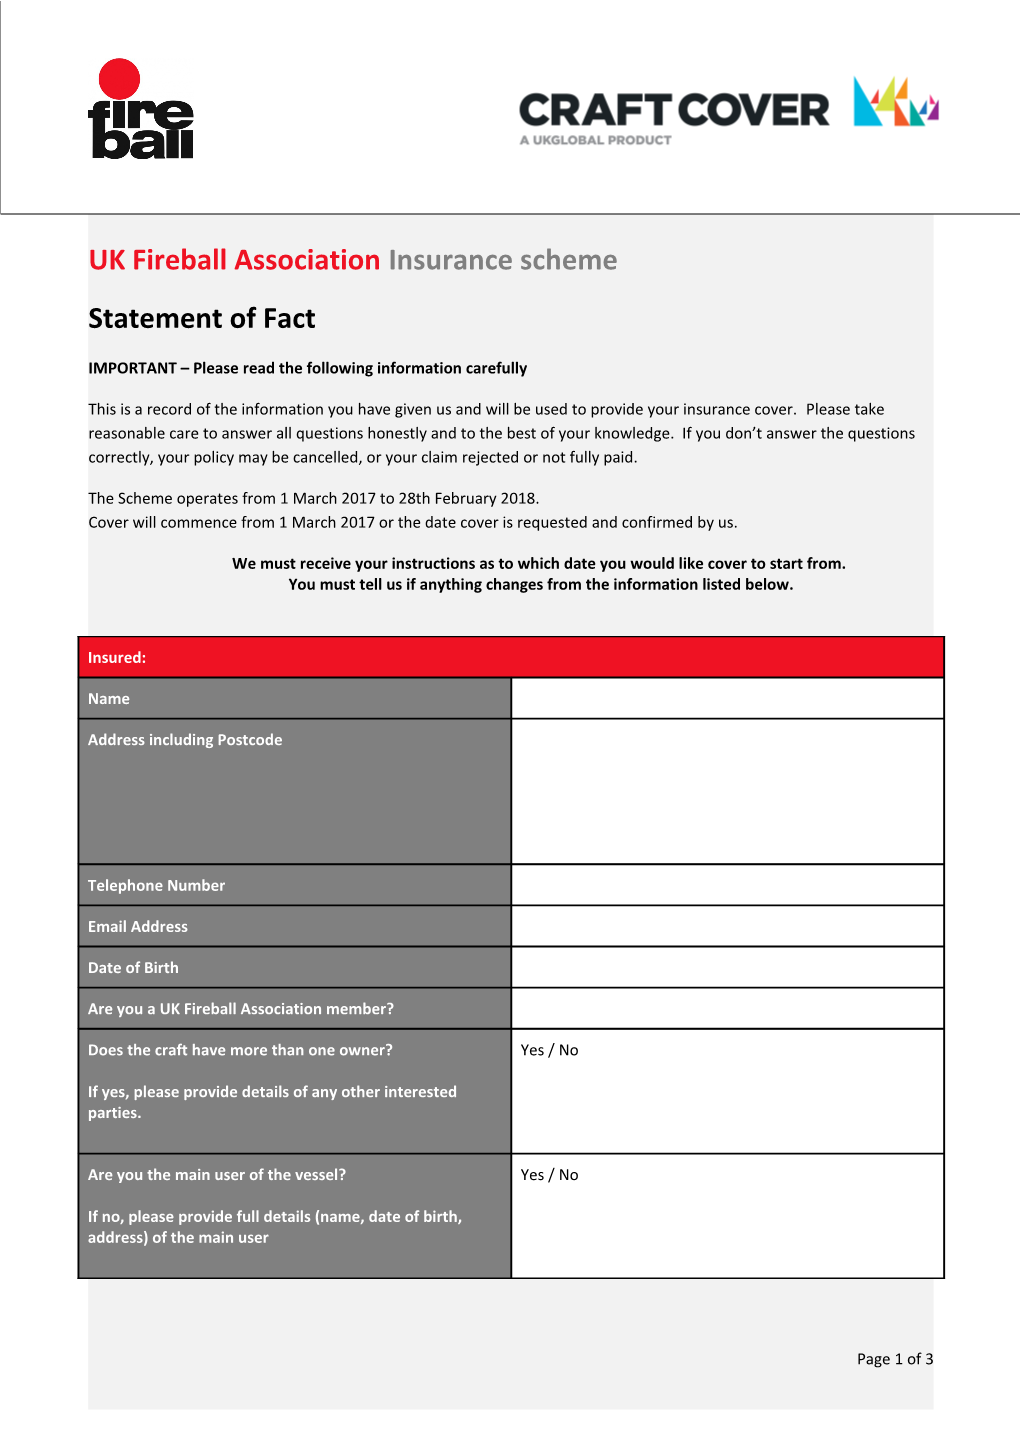 UK Fireball Association Insurance Scheme